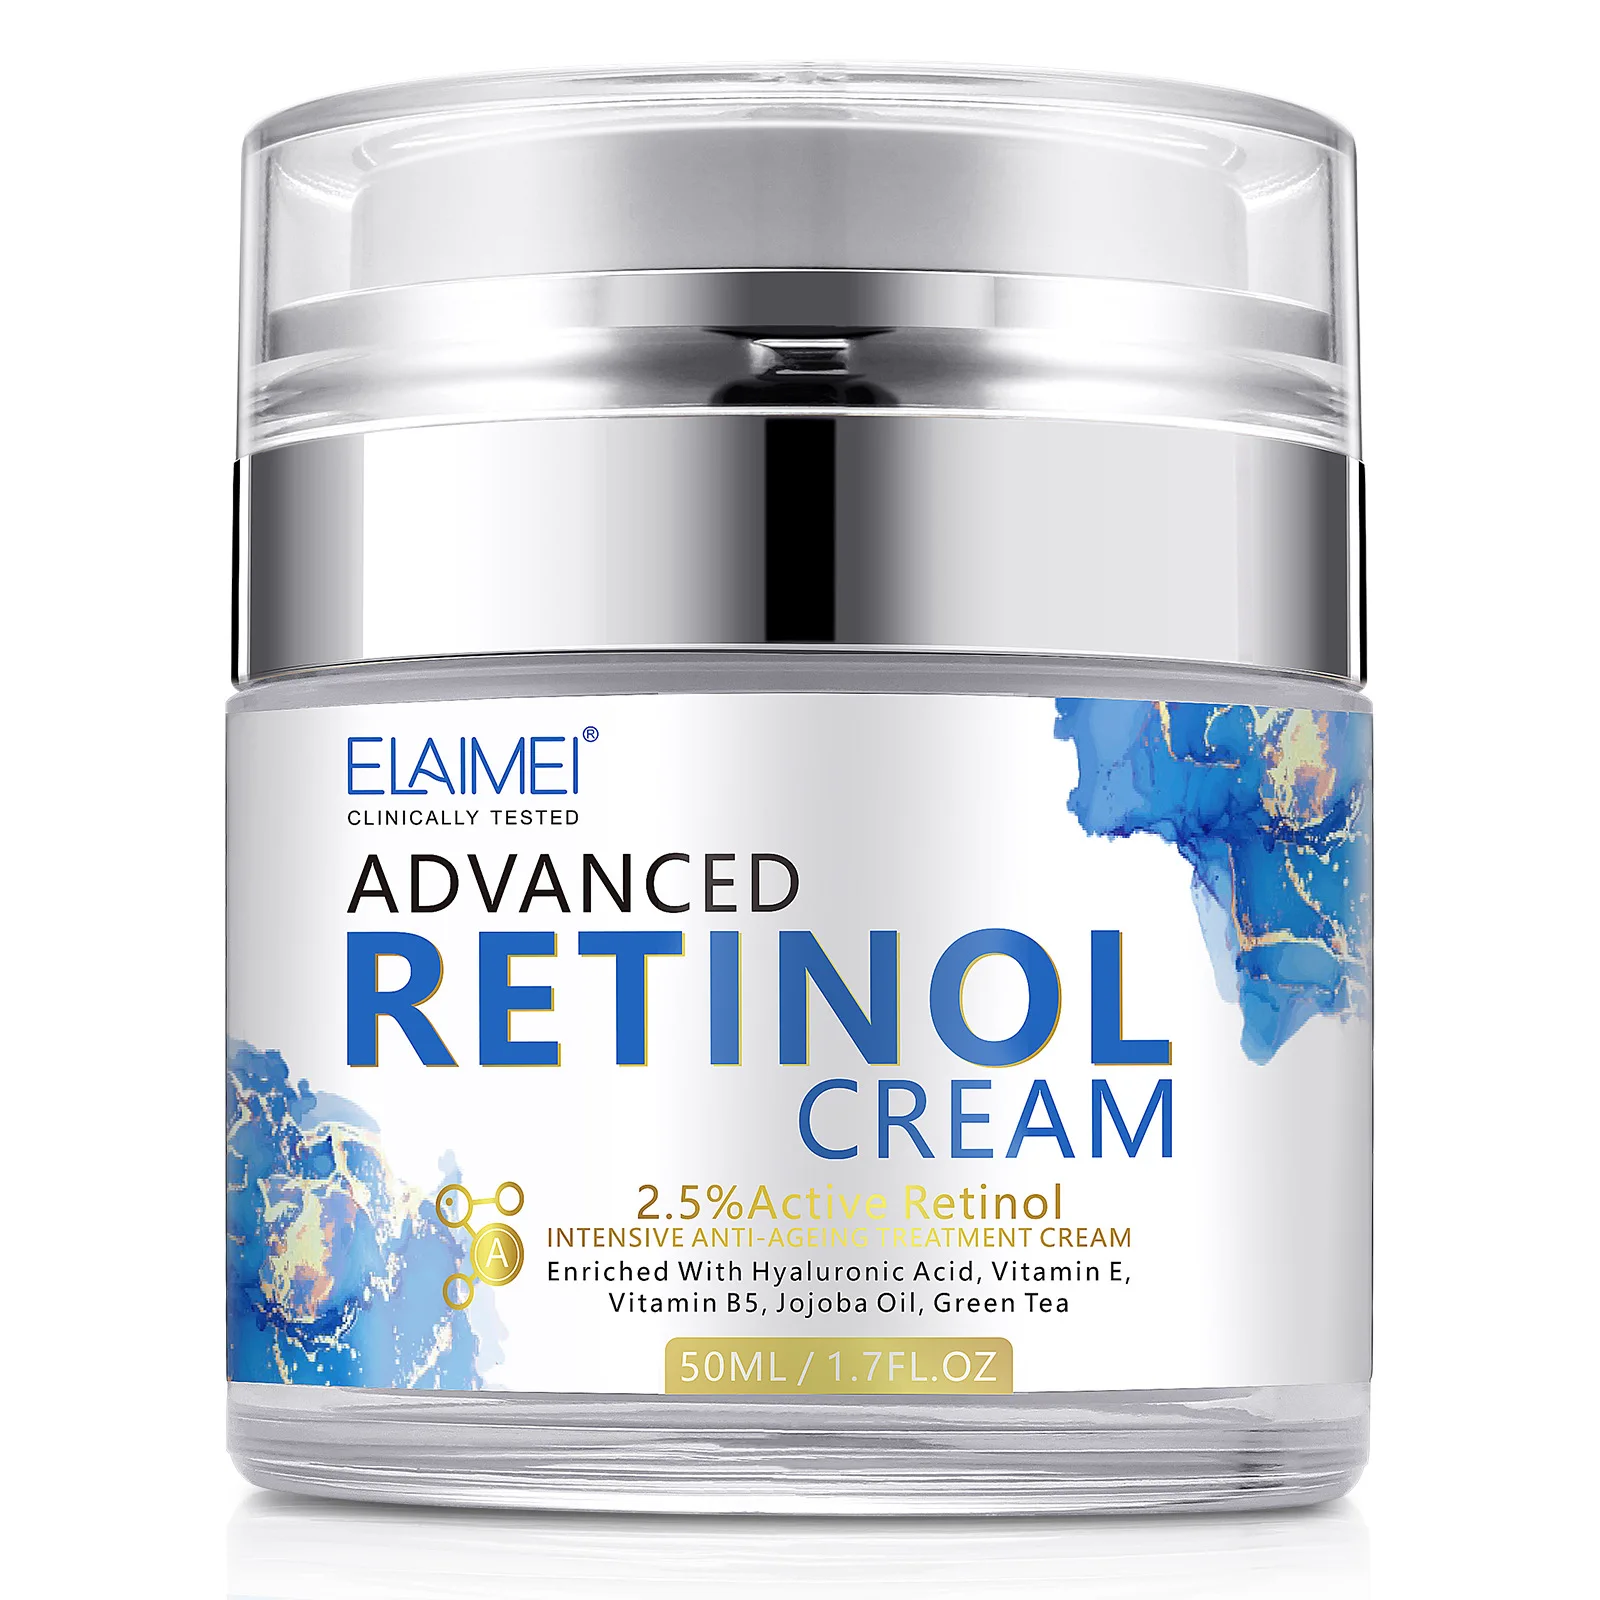 

Retinol Face Cream Firming Brightening Moisturizing Hyaluronic Acid Vitamin C Facial Cream skincare Face Creams